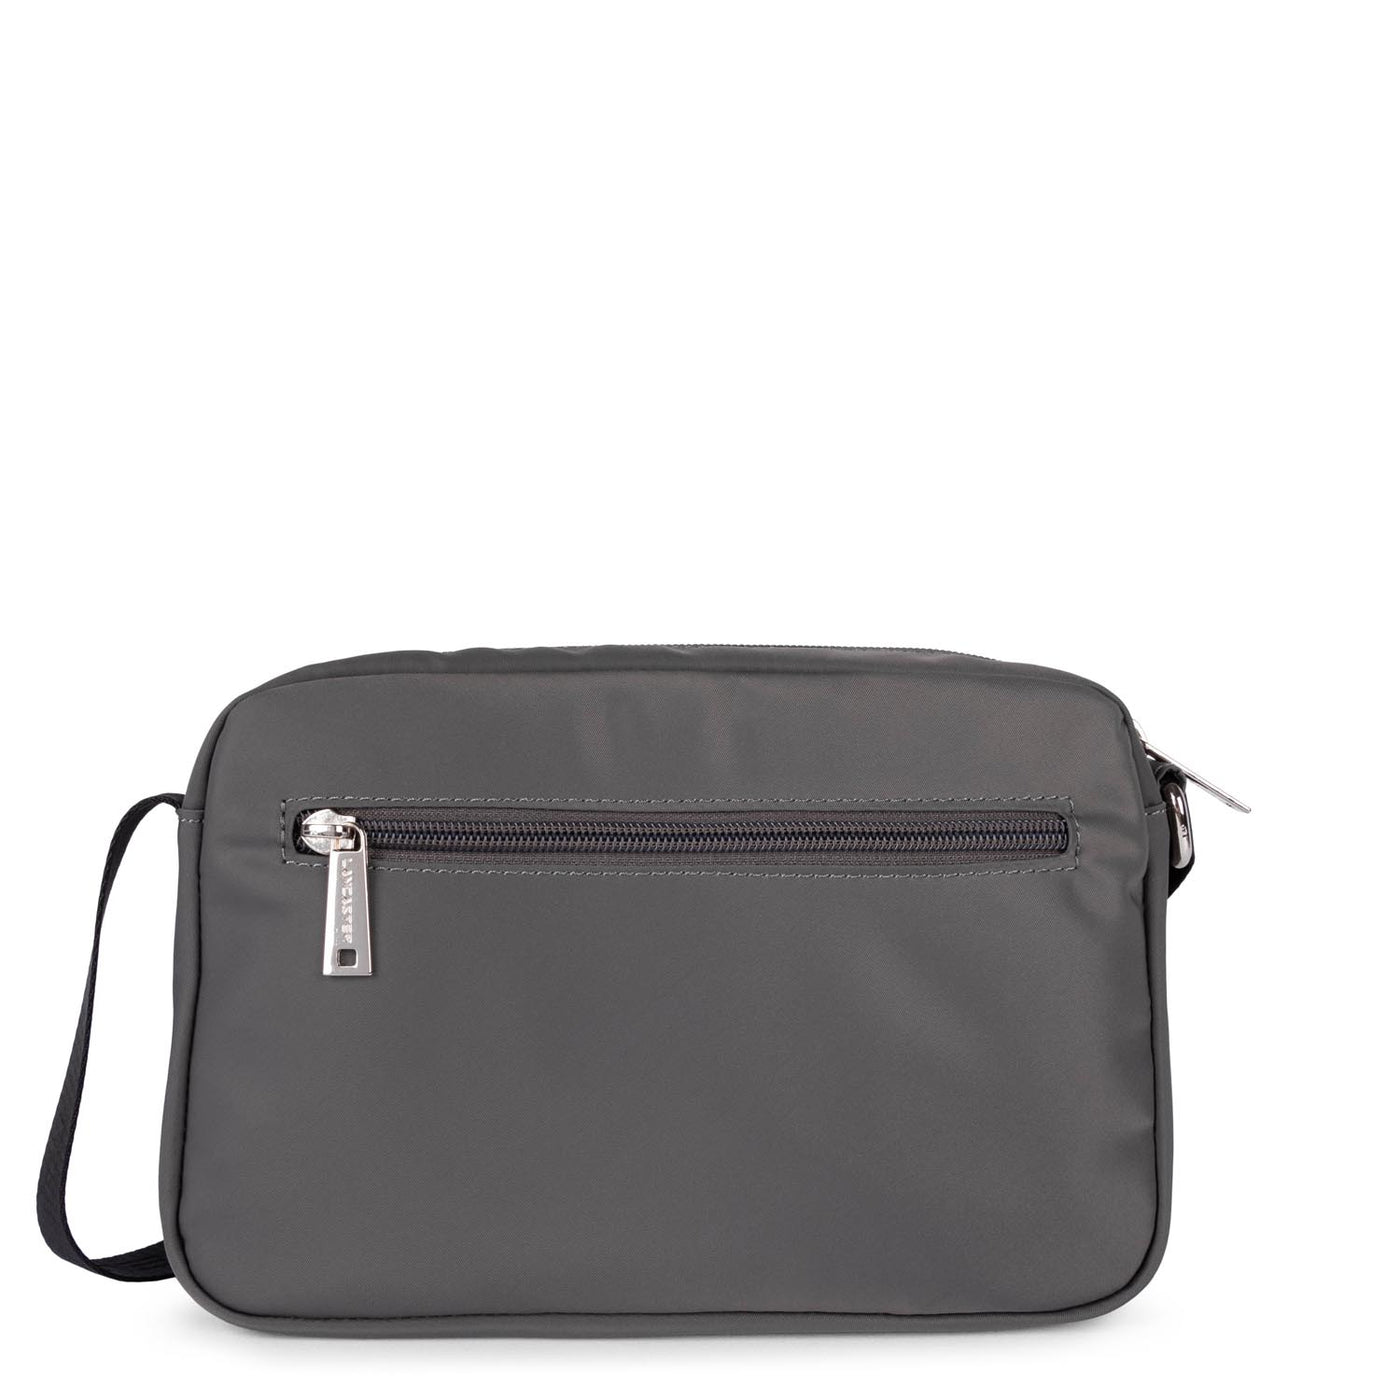 crossbody bag - basic sport #couleur_gris-noir